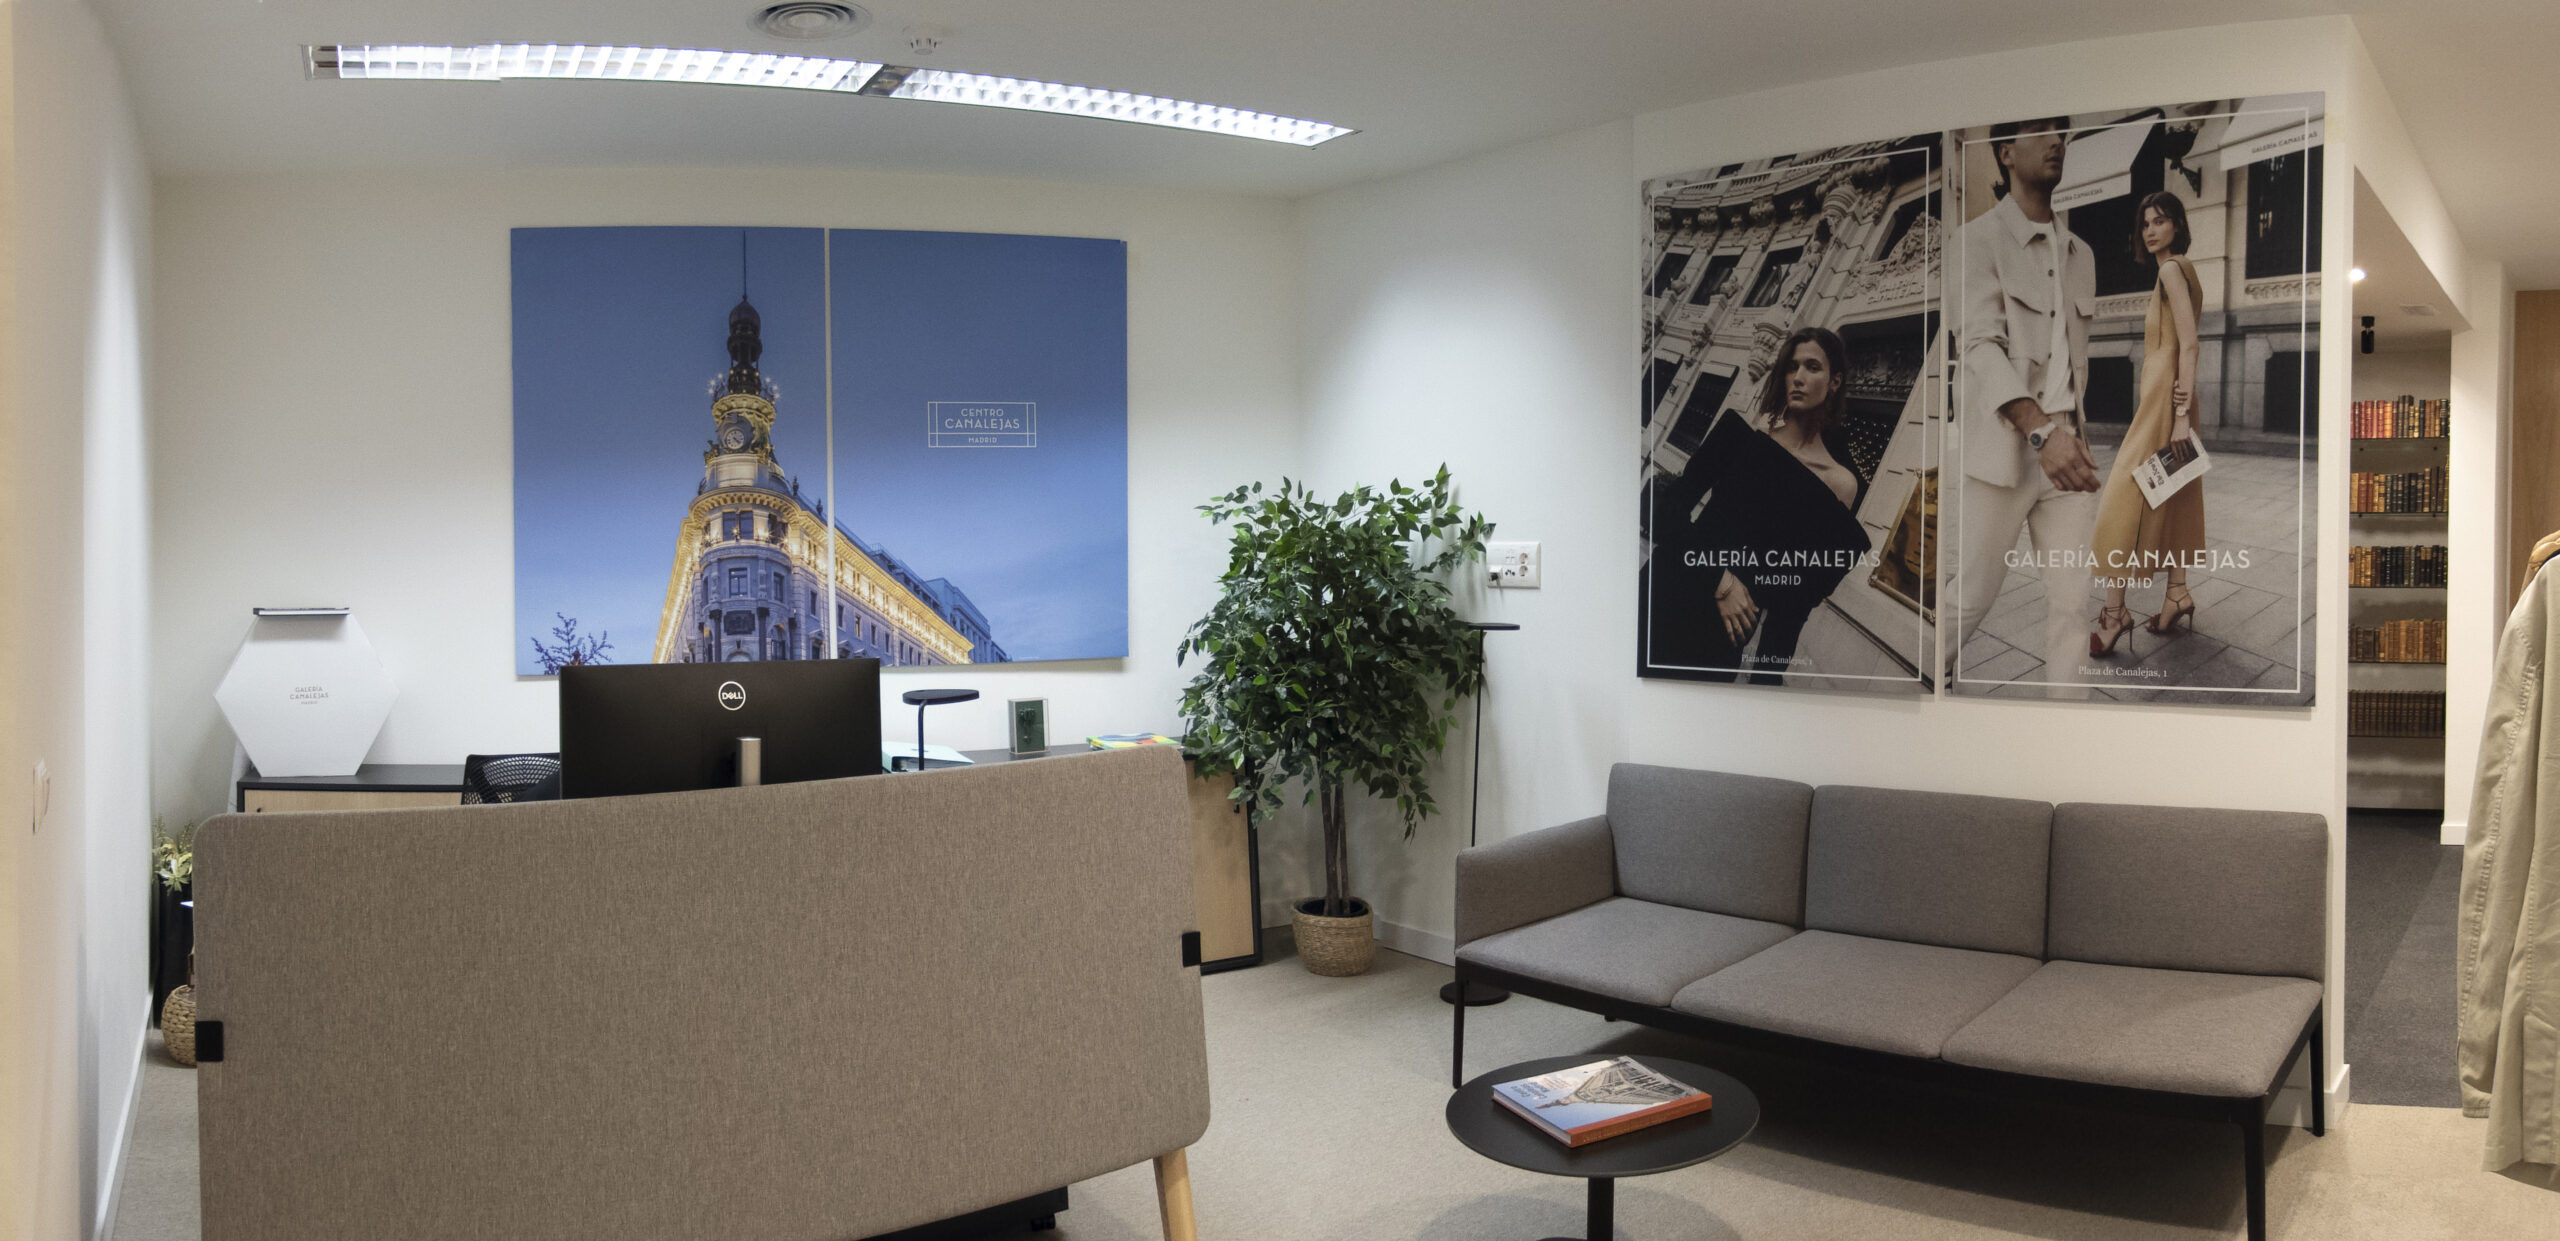 Proyecto de interiorismo y ejecución de reforma de oficina y despachos para Centro Canalejas Madrid, incluyendo nueva distribución, aseos, cocina, revestimientos y acabados, iluminación, carpintería y mobiliario.